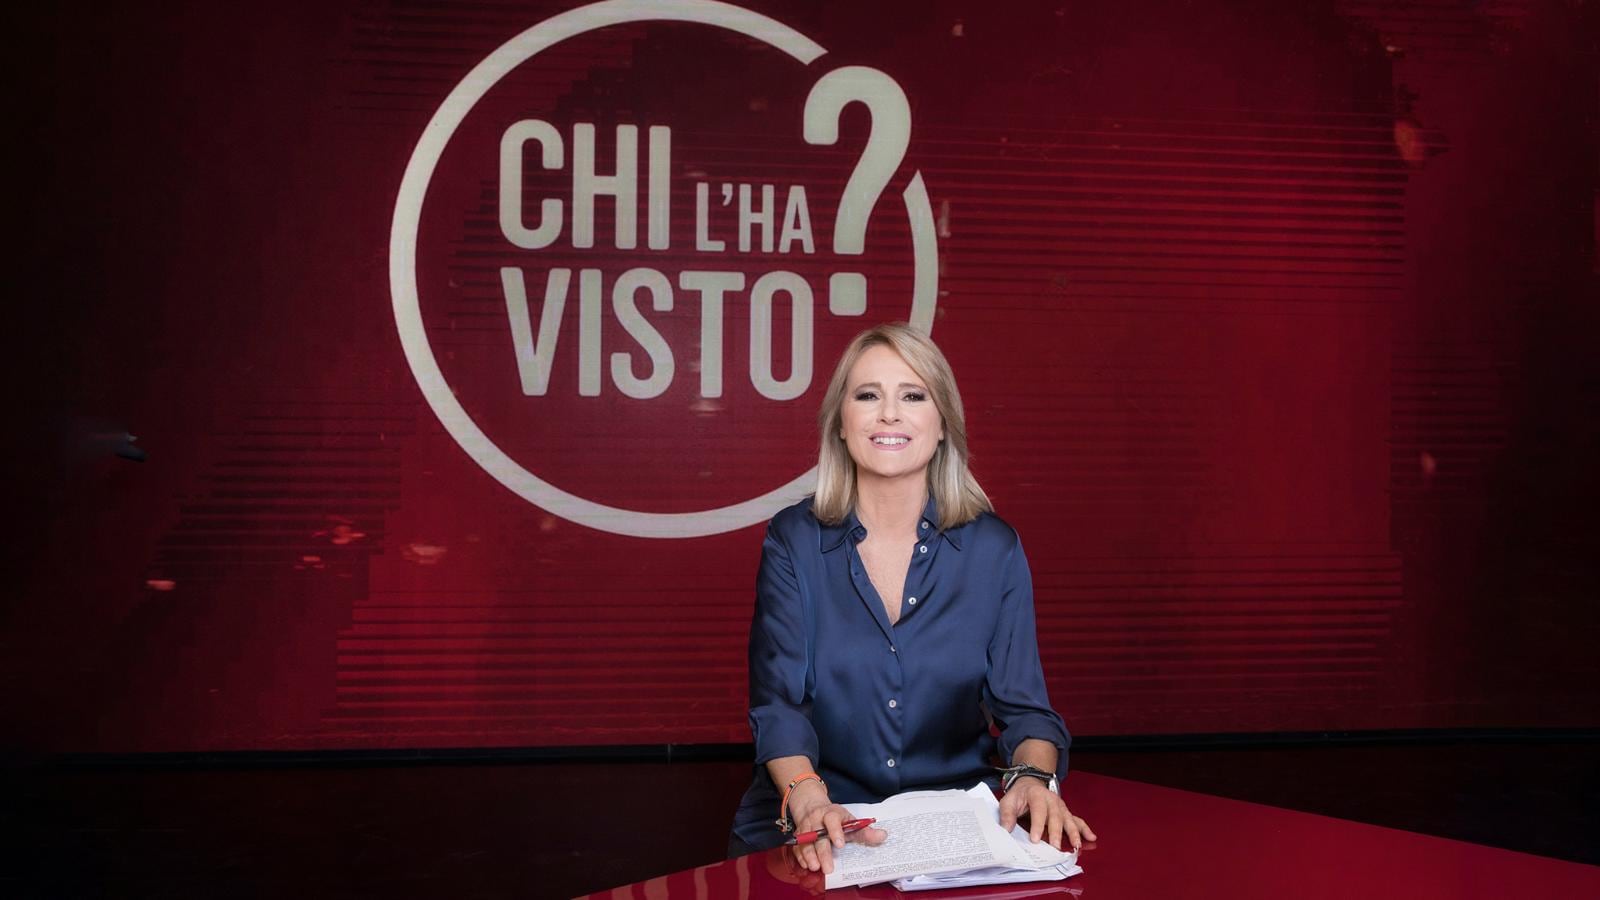 GUIDA TV 30 NOVEMBRE 2022: POLONIA ARGENTINA, IL MEGLIO DI ZELIG, CHI L’HA VISTO